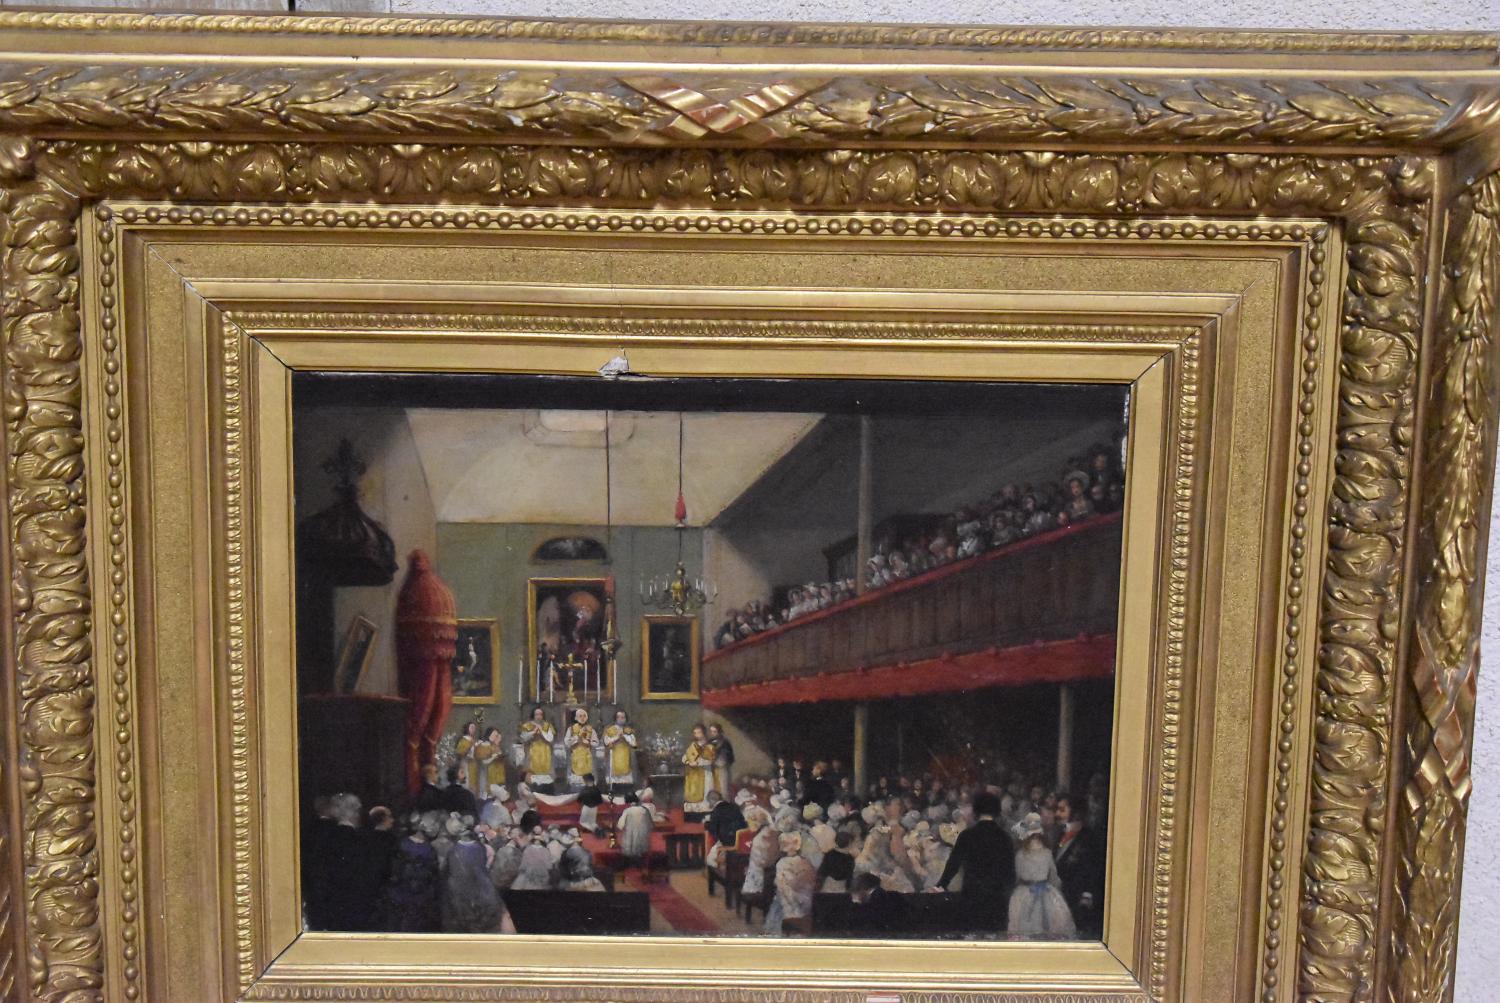 tableau : La première communion du Comte de Paris célébrée le 20 juillet 1850 dans la chapelle catholique française de Hings Street, Postman Square, Londres